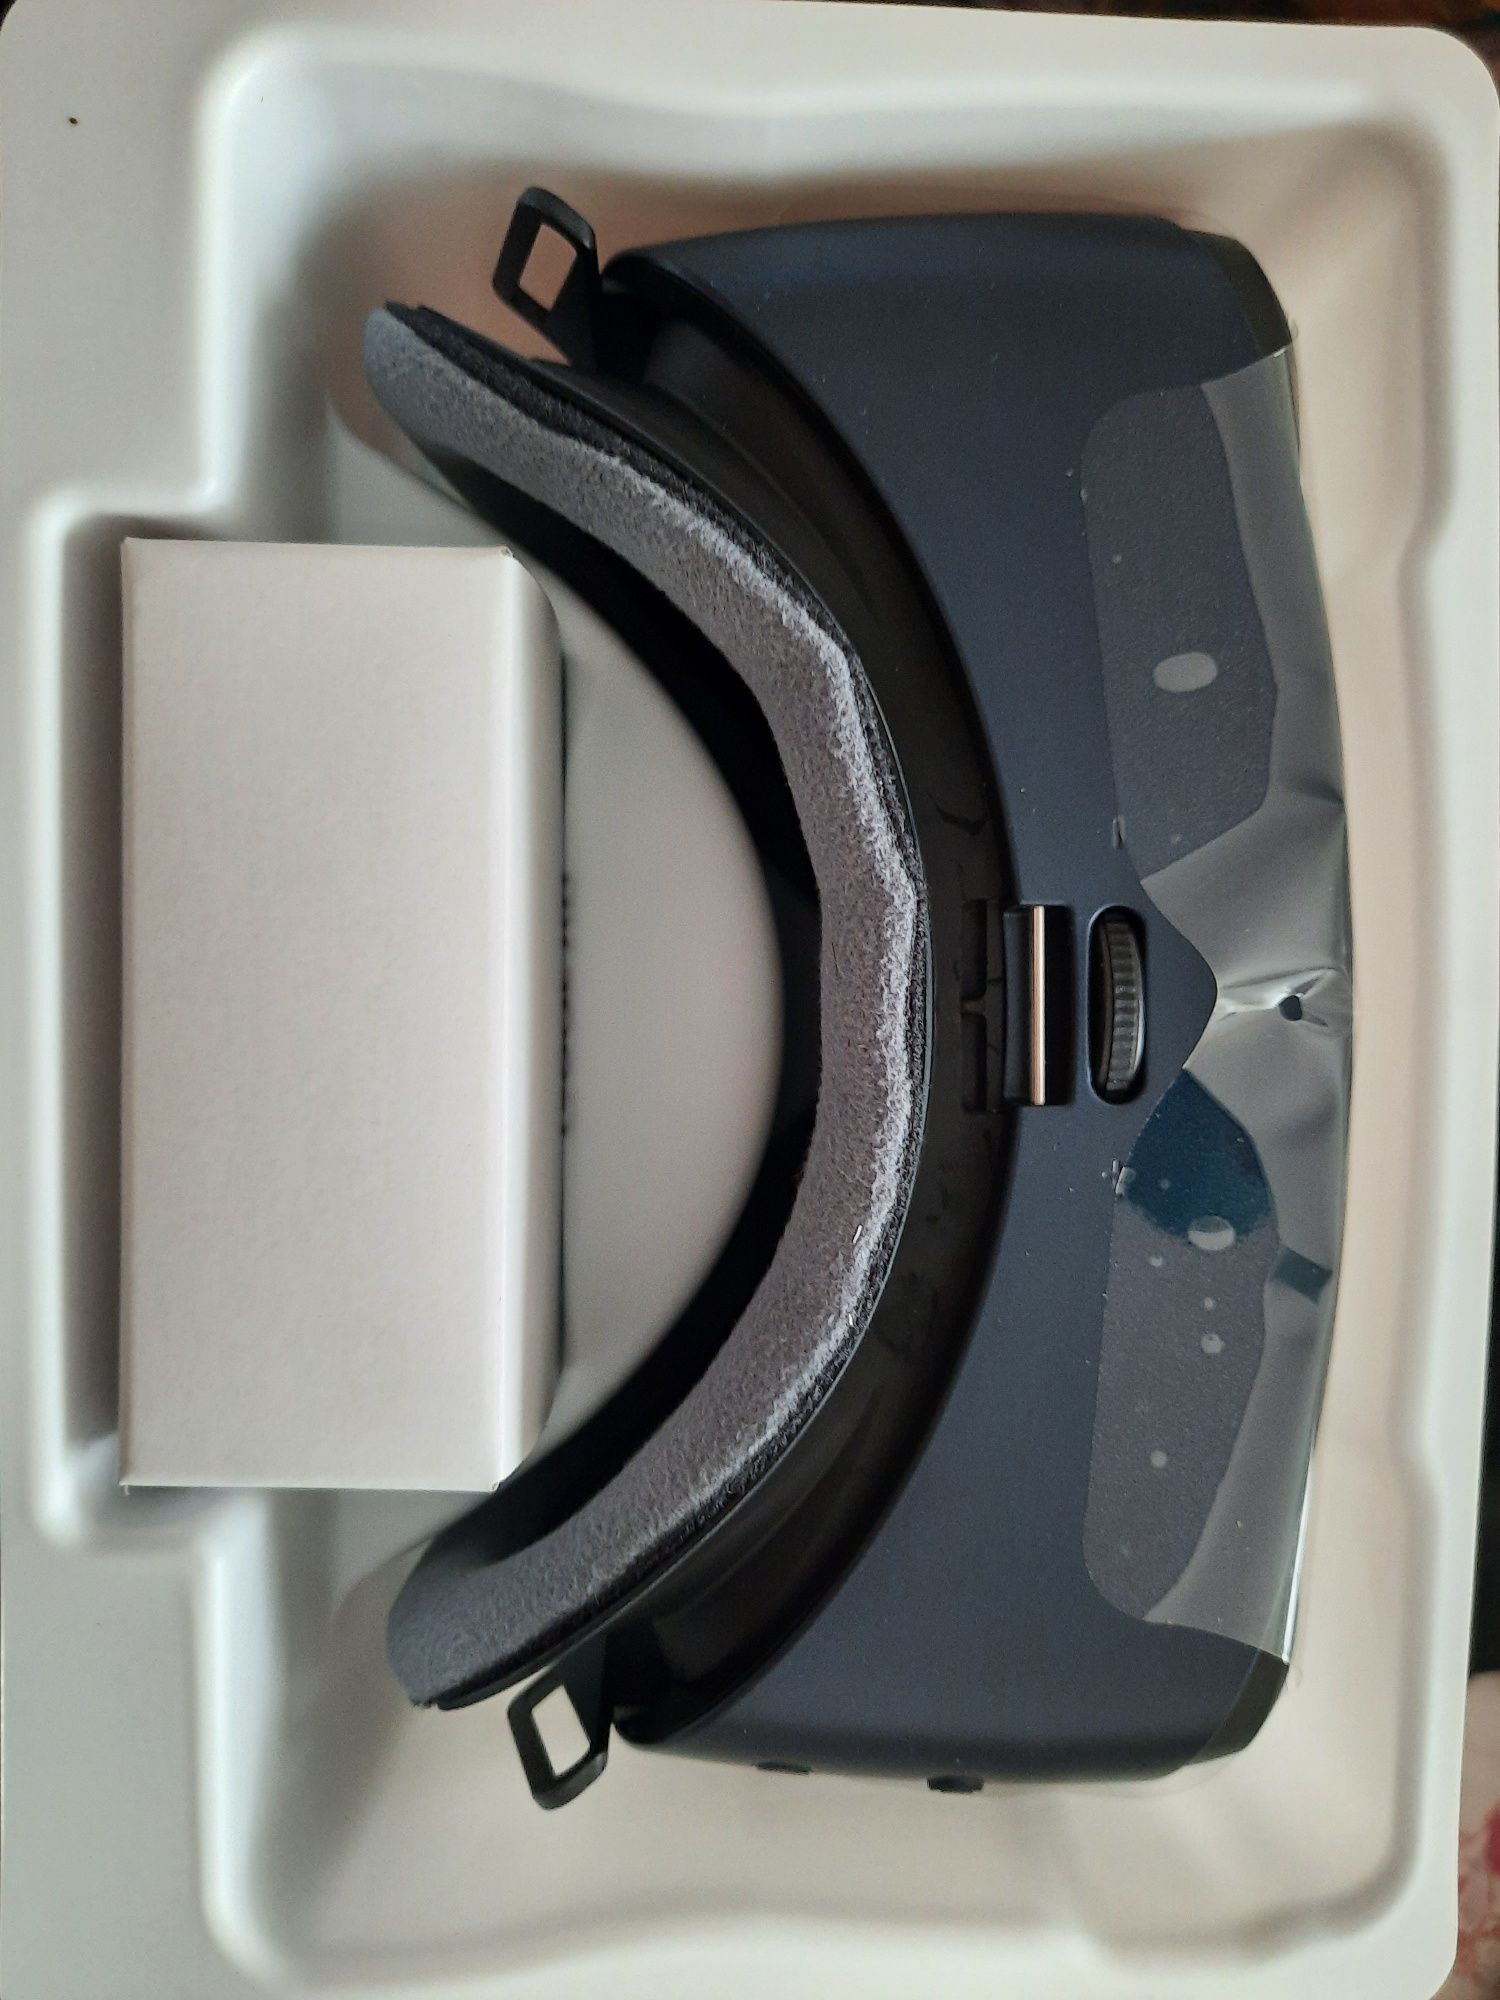 Samsung Gear VR novos